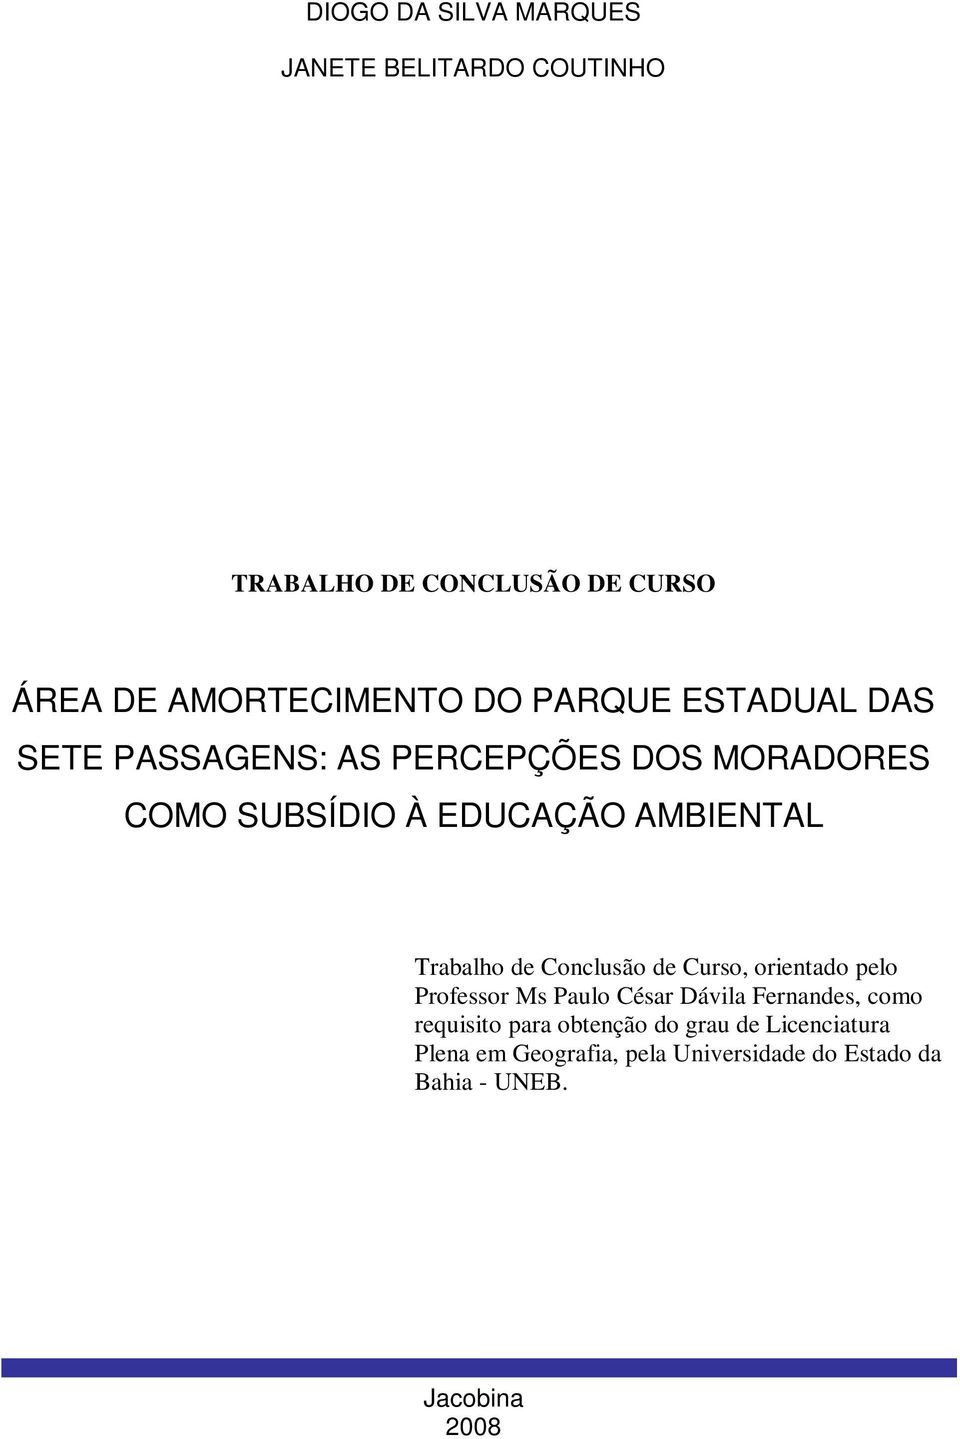 Trabalho de Conclusão de Curso, orientado pelo Professor Ms Paulo César Dávila Fernandes, como requisito